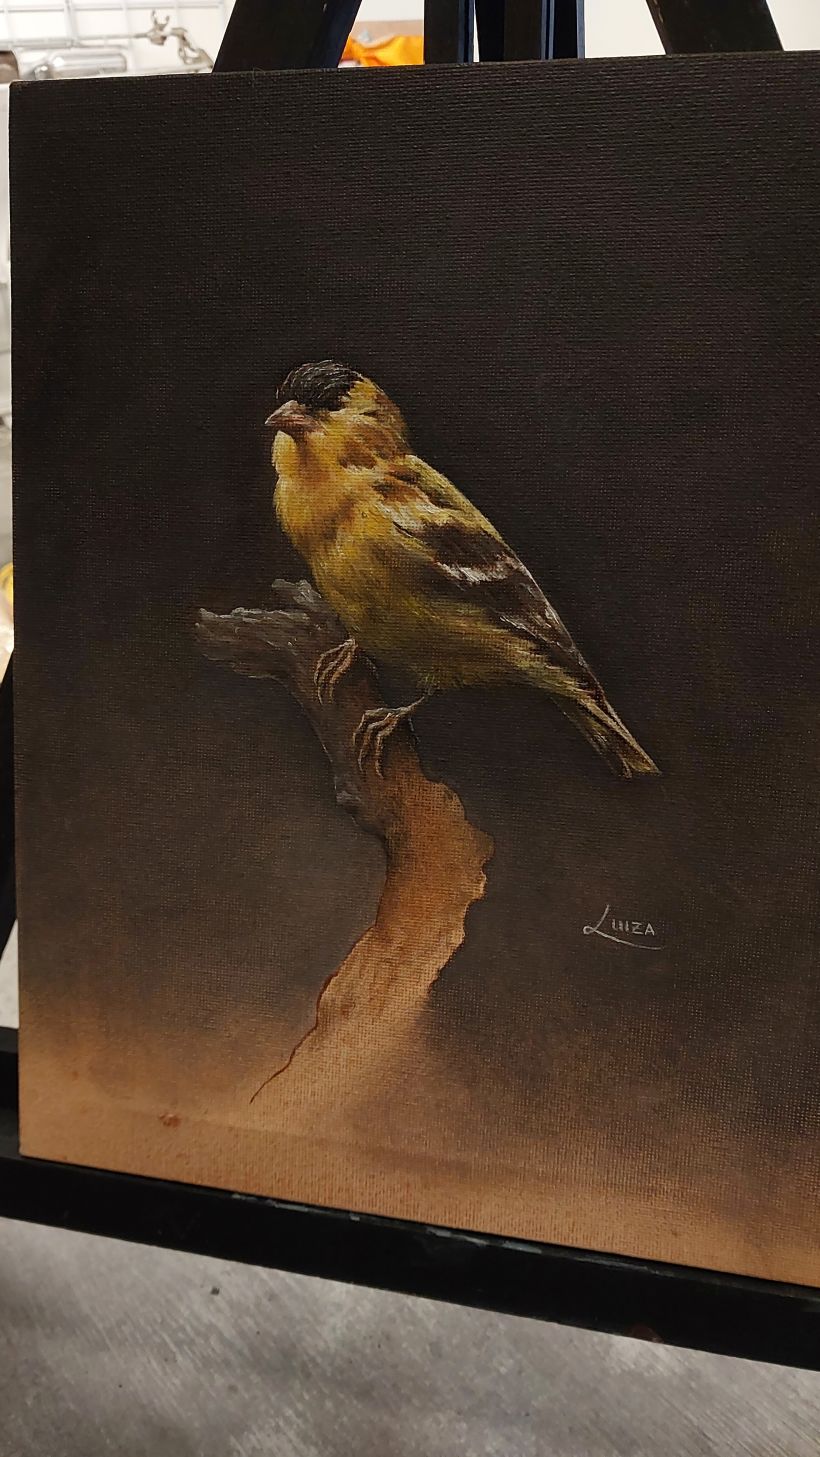 Meu projeto do curso: Pintura a óleo clássica para retratos naturalistas de pássaros 2